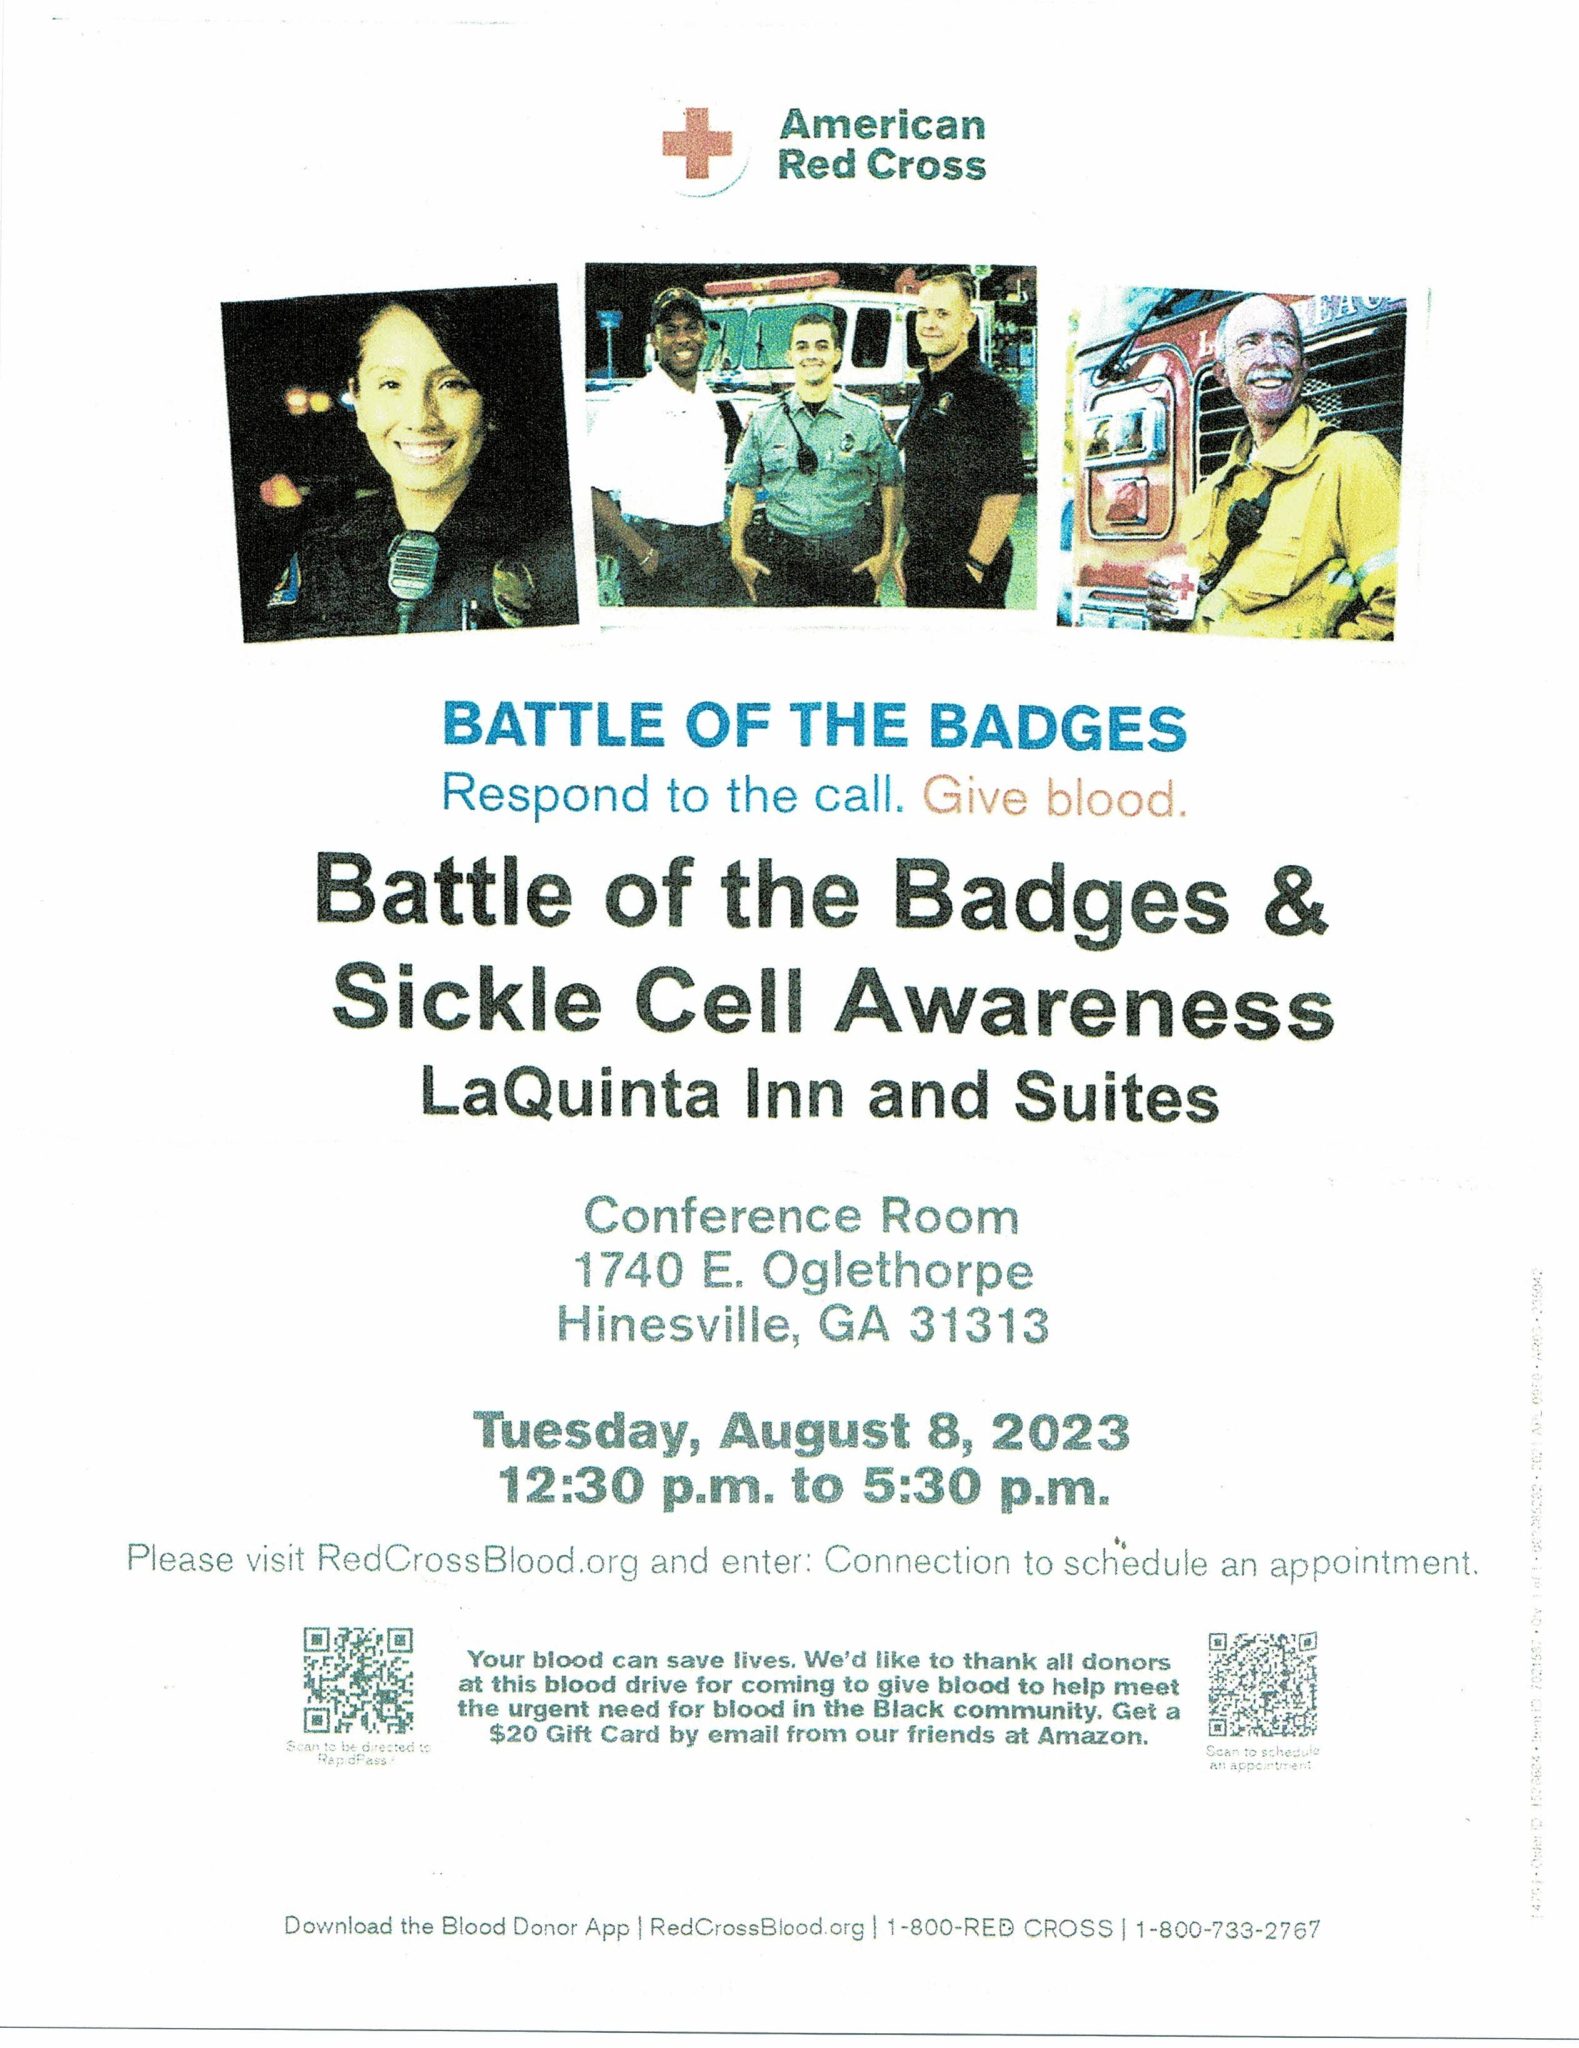 Battle of the badges flyer